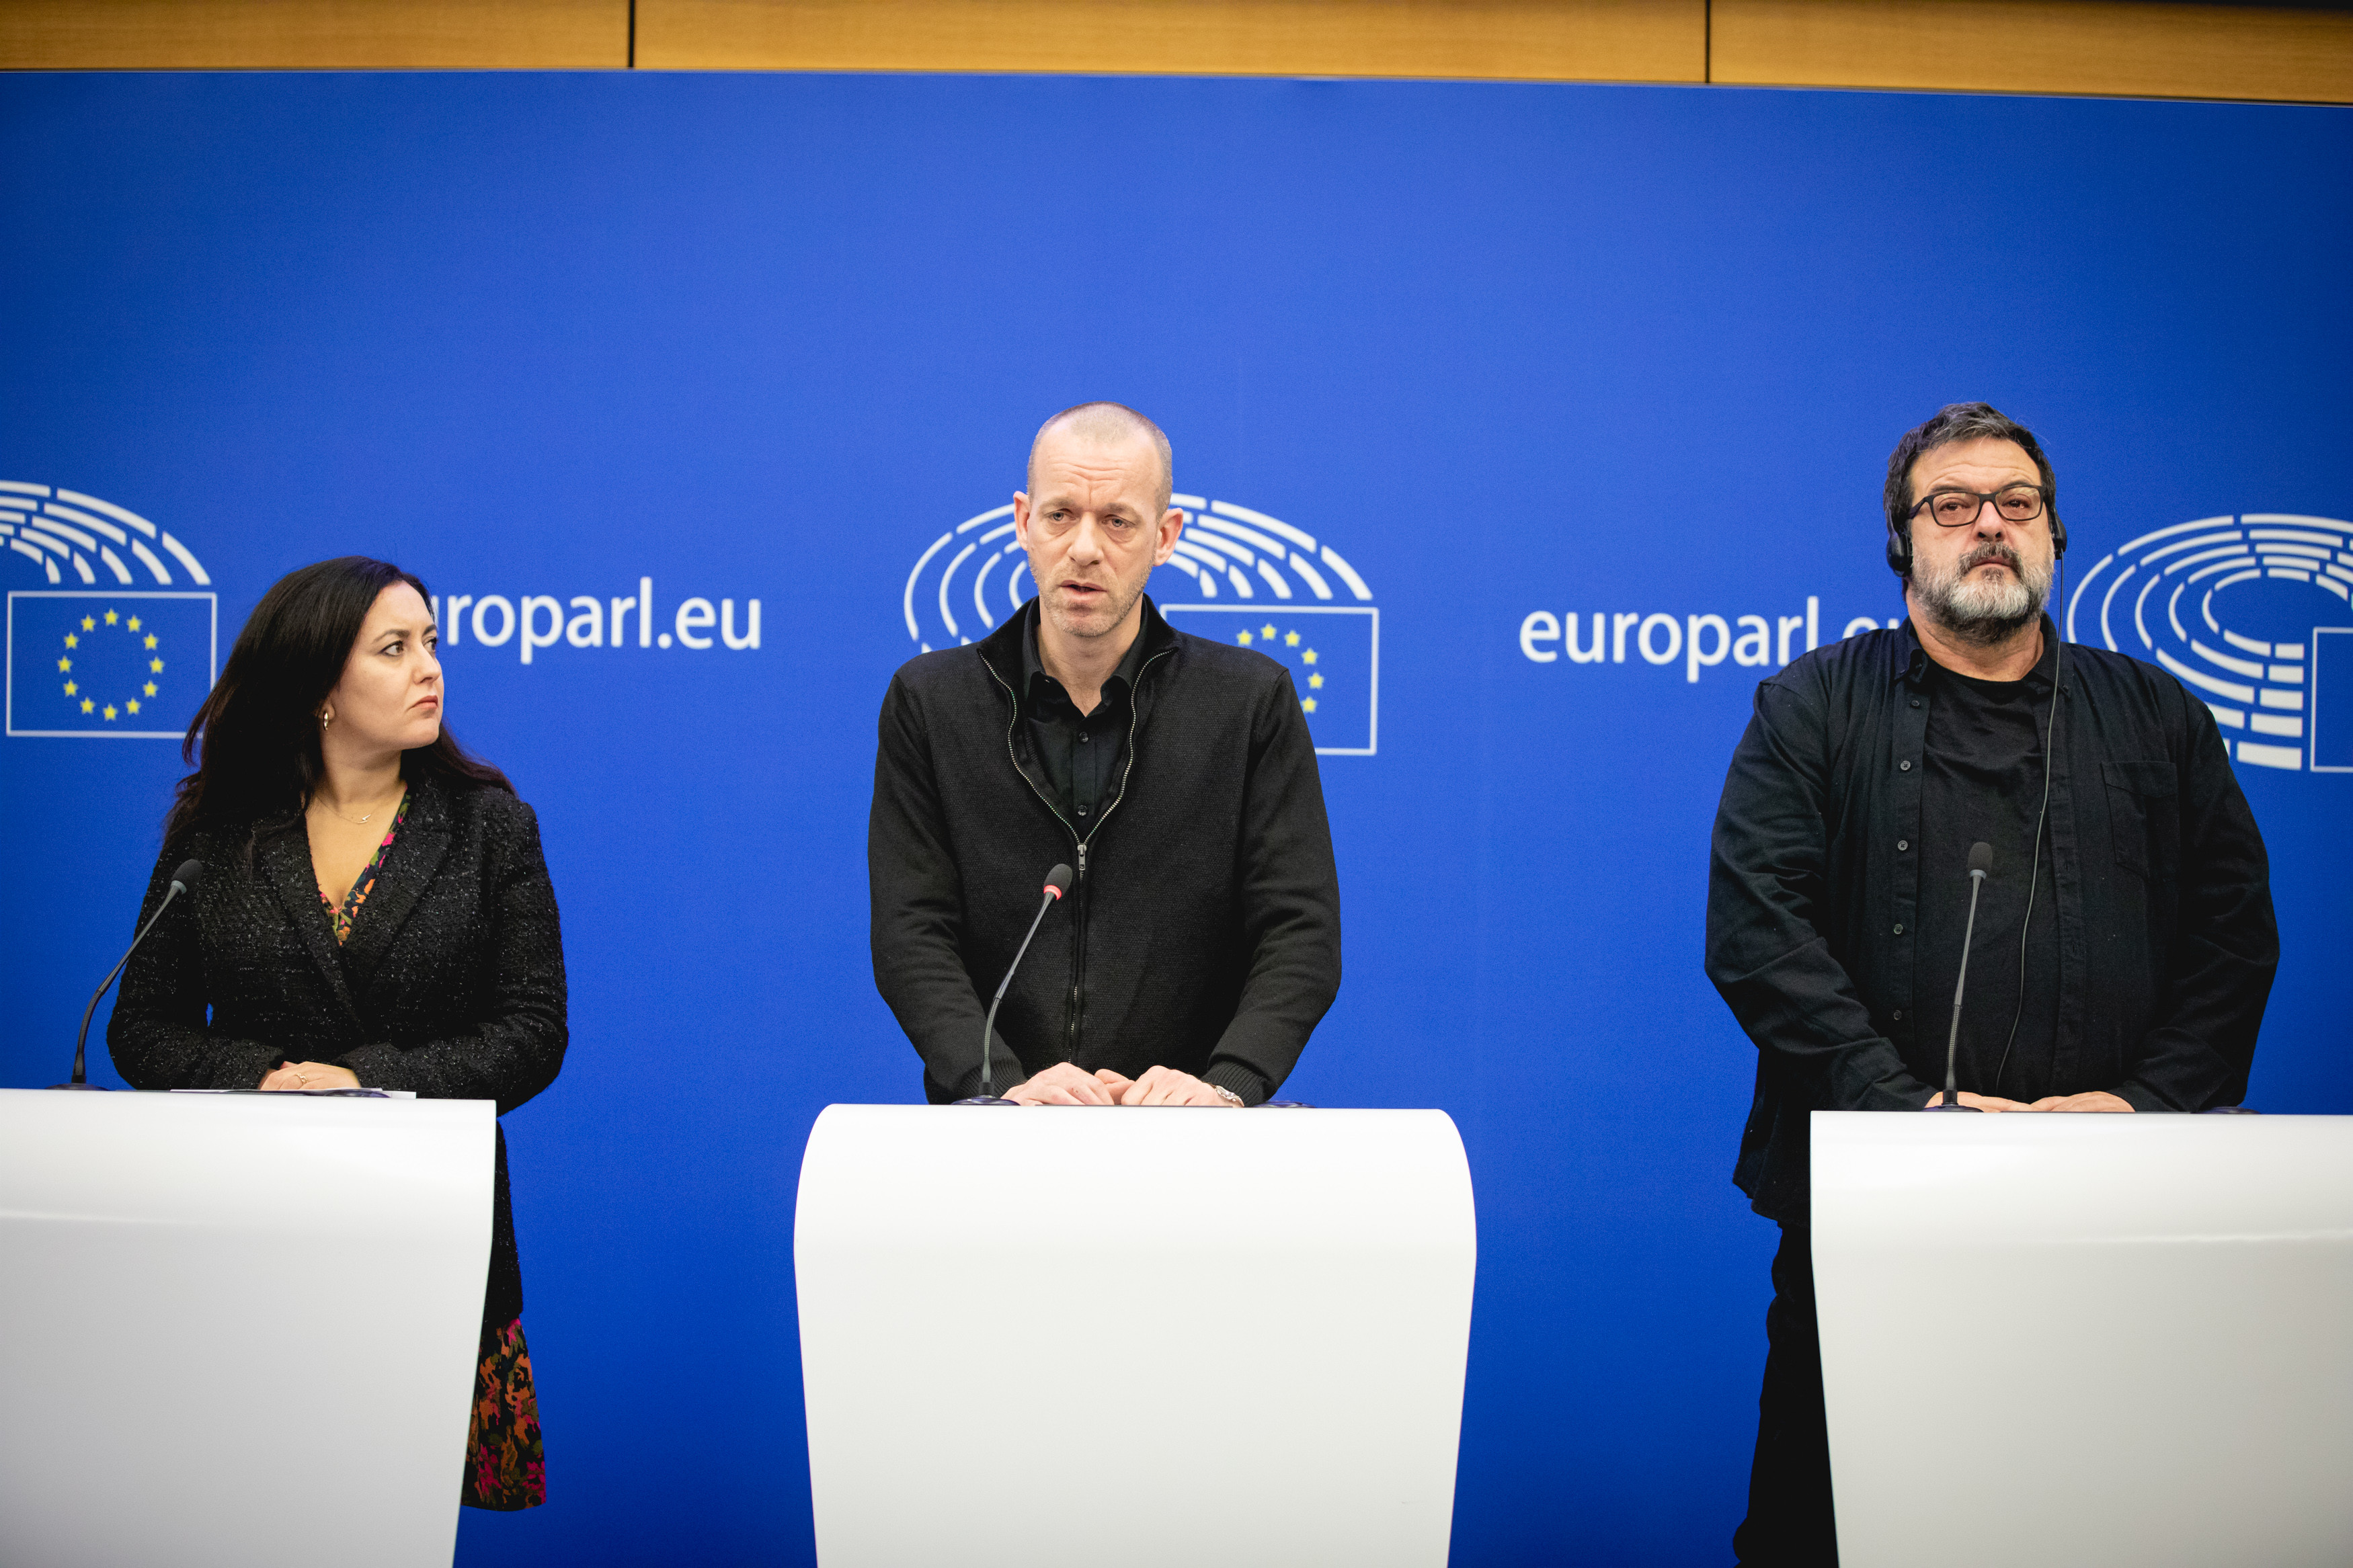 Салах Хаммури (посередине) выступает с речью в Европарламенте на тему израильской программы Pegasus по слежке за правозащитниками, январь 2023 